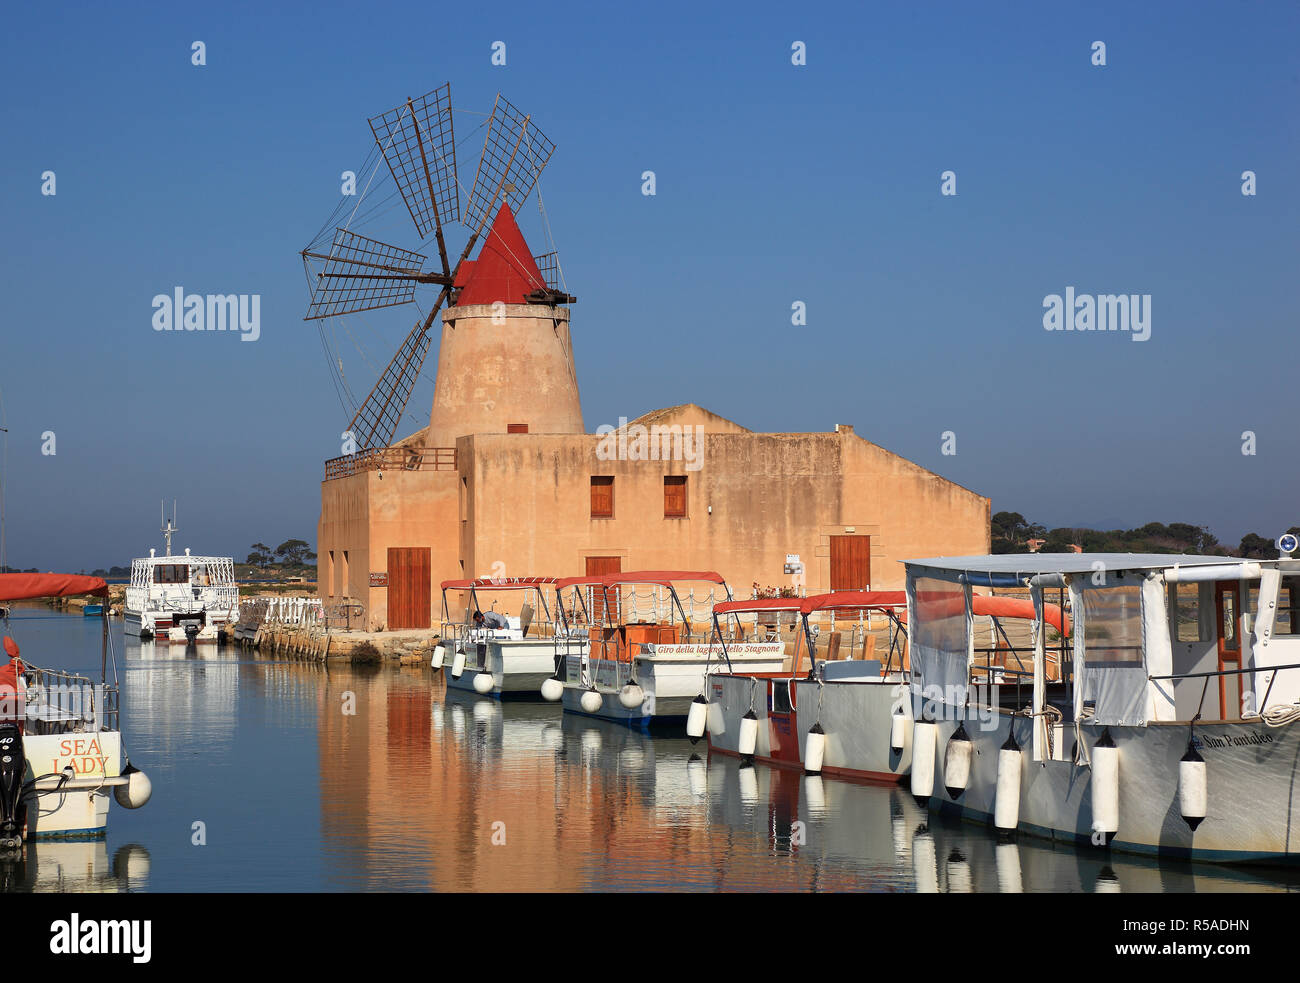 Il mulino a vento e barche presso le saline, nei pressi di Mozia, piccola isola di San Pantaleo off Marsala, Sicilia, Italia Foto Stock